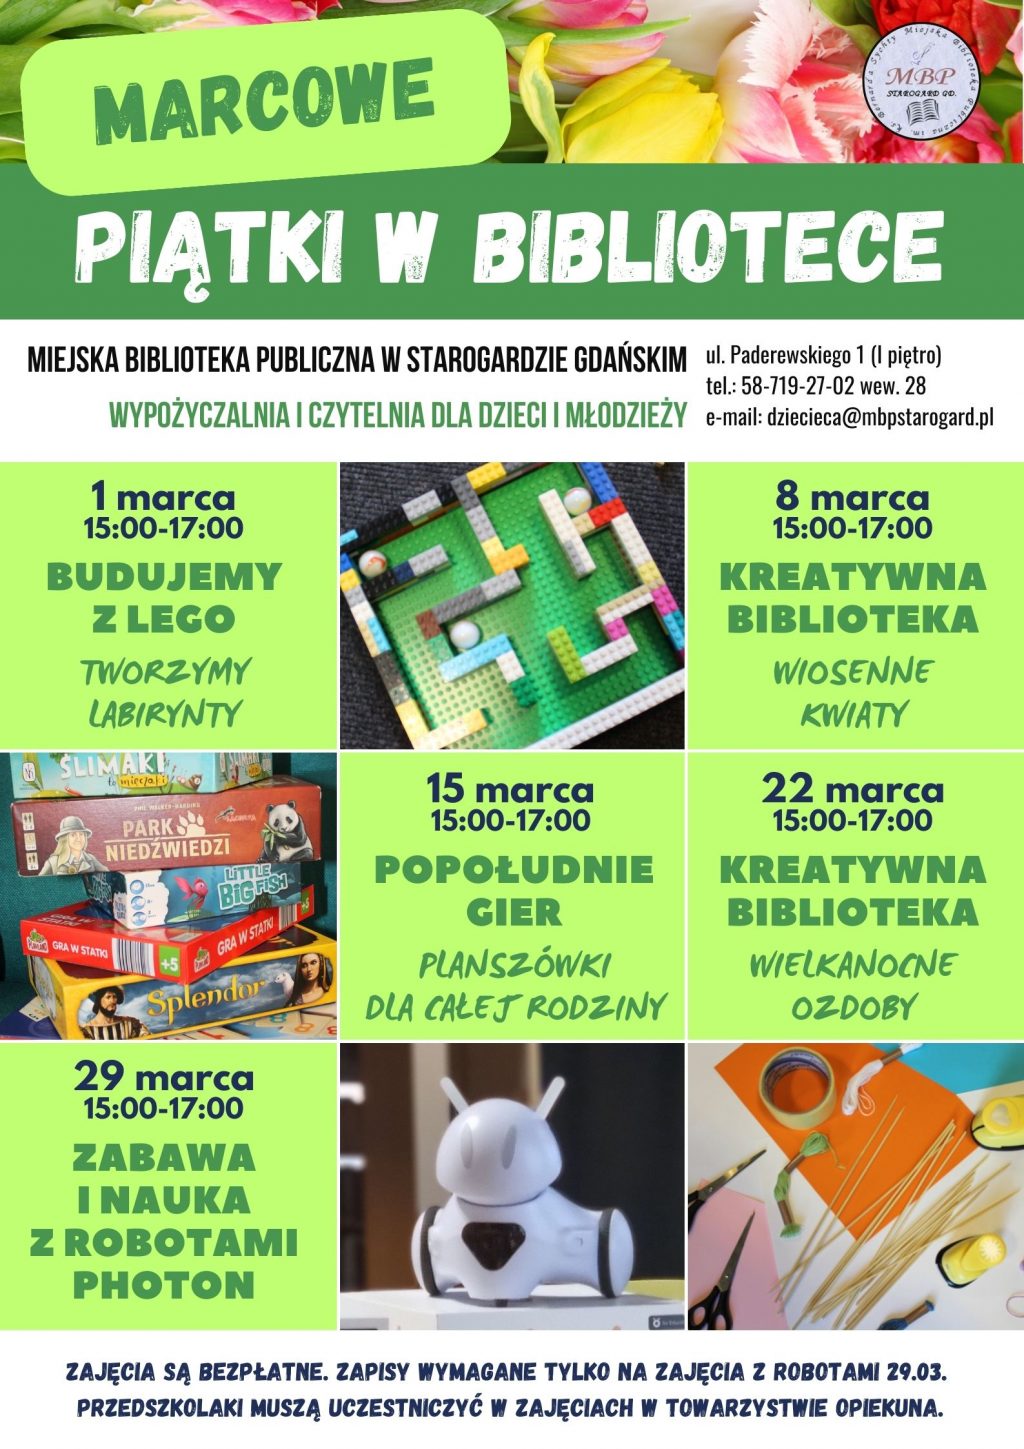 Plakat informujący o wydarzeniu: Marcowe piątki w bibliotece. Miejska Biblioteka Publiczna w Starogardzie Gdańskim, Wypożyczalnia i Czytelnia dla Dzieci i Młodzieży, ul. Paderewskiego 1, tel. 58-719-27-02 wew. 28, e-mail: dziecieca@mbpstarogard.pl. 1 marca, 15:00-17:00 - Budujemy z Lego - Tworzymy labirynty; 8 marca, 15:00-17:00 - Kreatywna biblioteka - Wiosenne kwiaty; 15 marca, 15:00-17:00 - Popołudnie gier / Planszówki dla całej rodziny; 22 marca, 15:00-17:00 - Kreatywna biblioteka - Wielkanocne ozdoby; 29 marca, 15:00-17:00 - Zabawa i nauka z robotami Photon. Zajęcia są bezpłatne. Zapisy wymagane tylko na zajęcia z robotami 29.03. Przedszkolaki muszą uczestniczyć w zajęciach w towarzystwie opiekuna. Zdjęcia klocków Lego, gier planszowych, robota typu Photon, materiałów plastycznych.